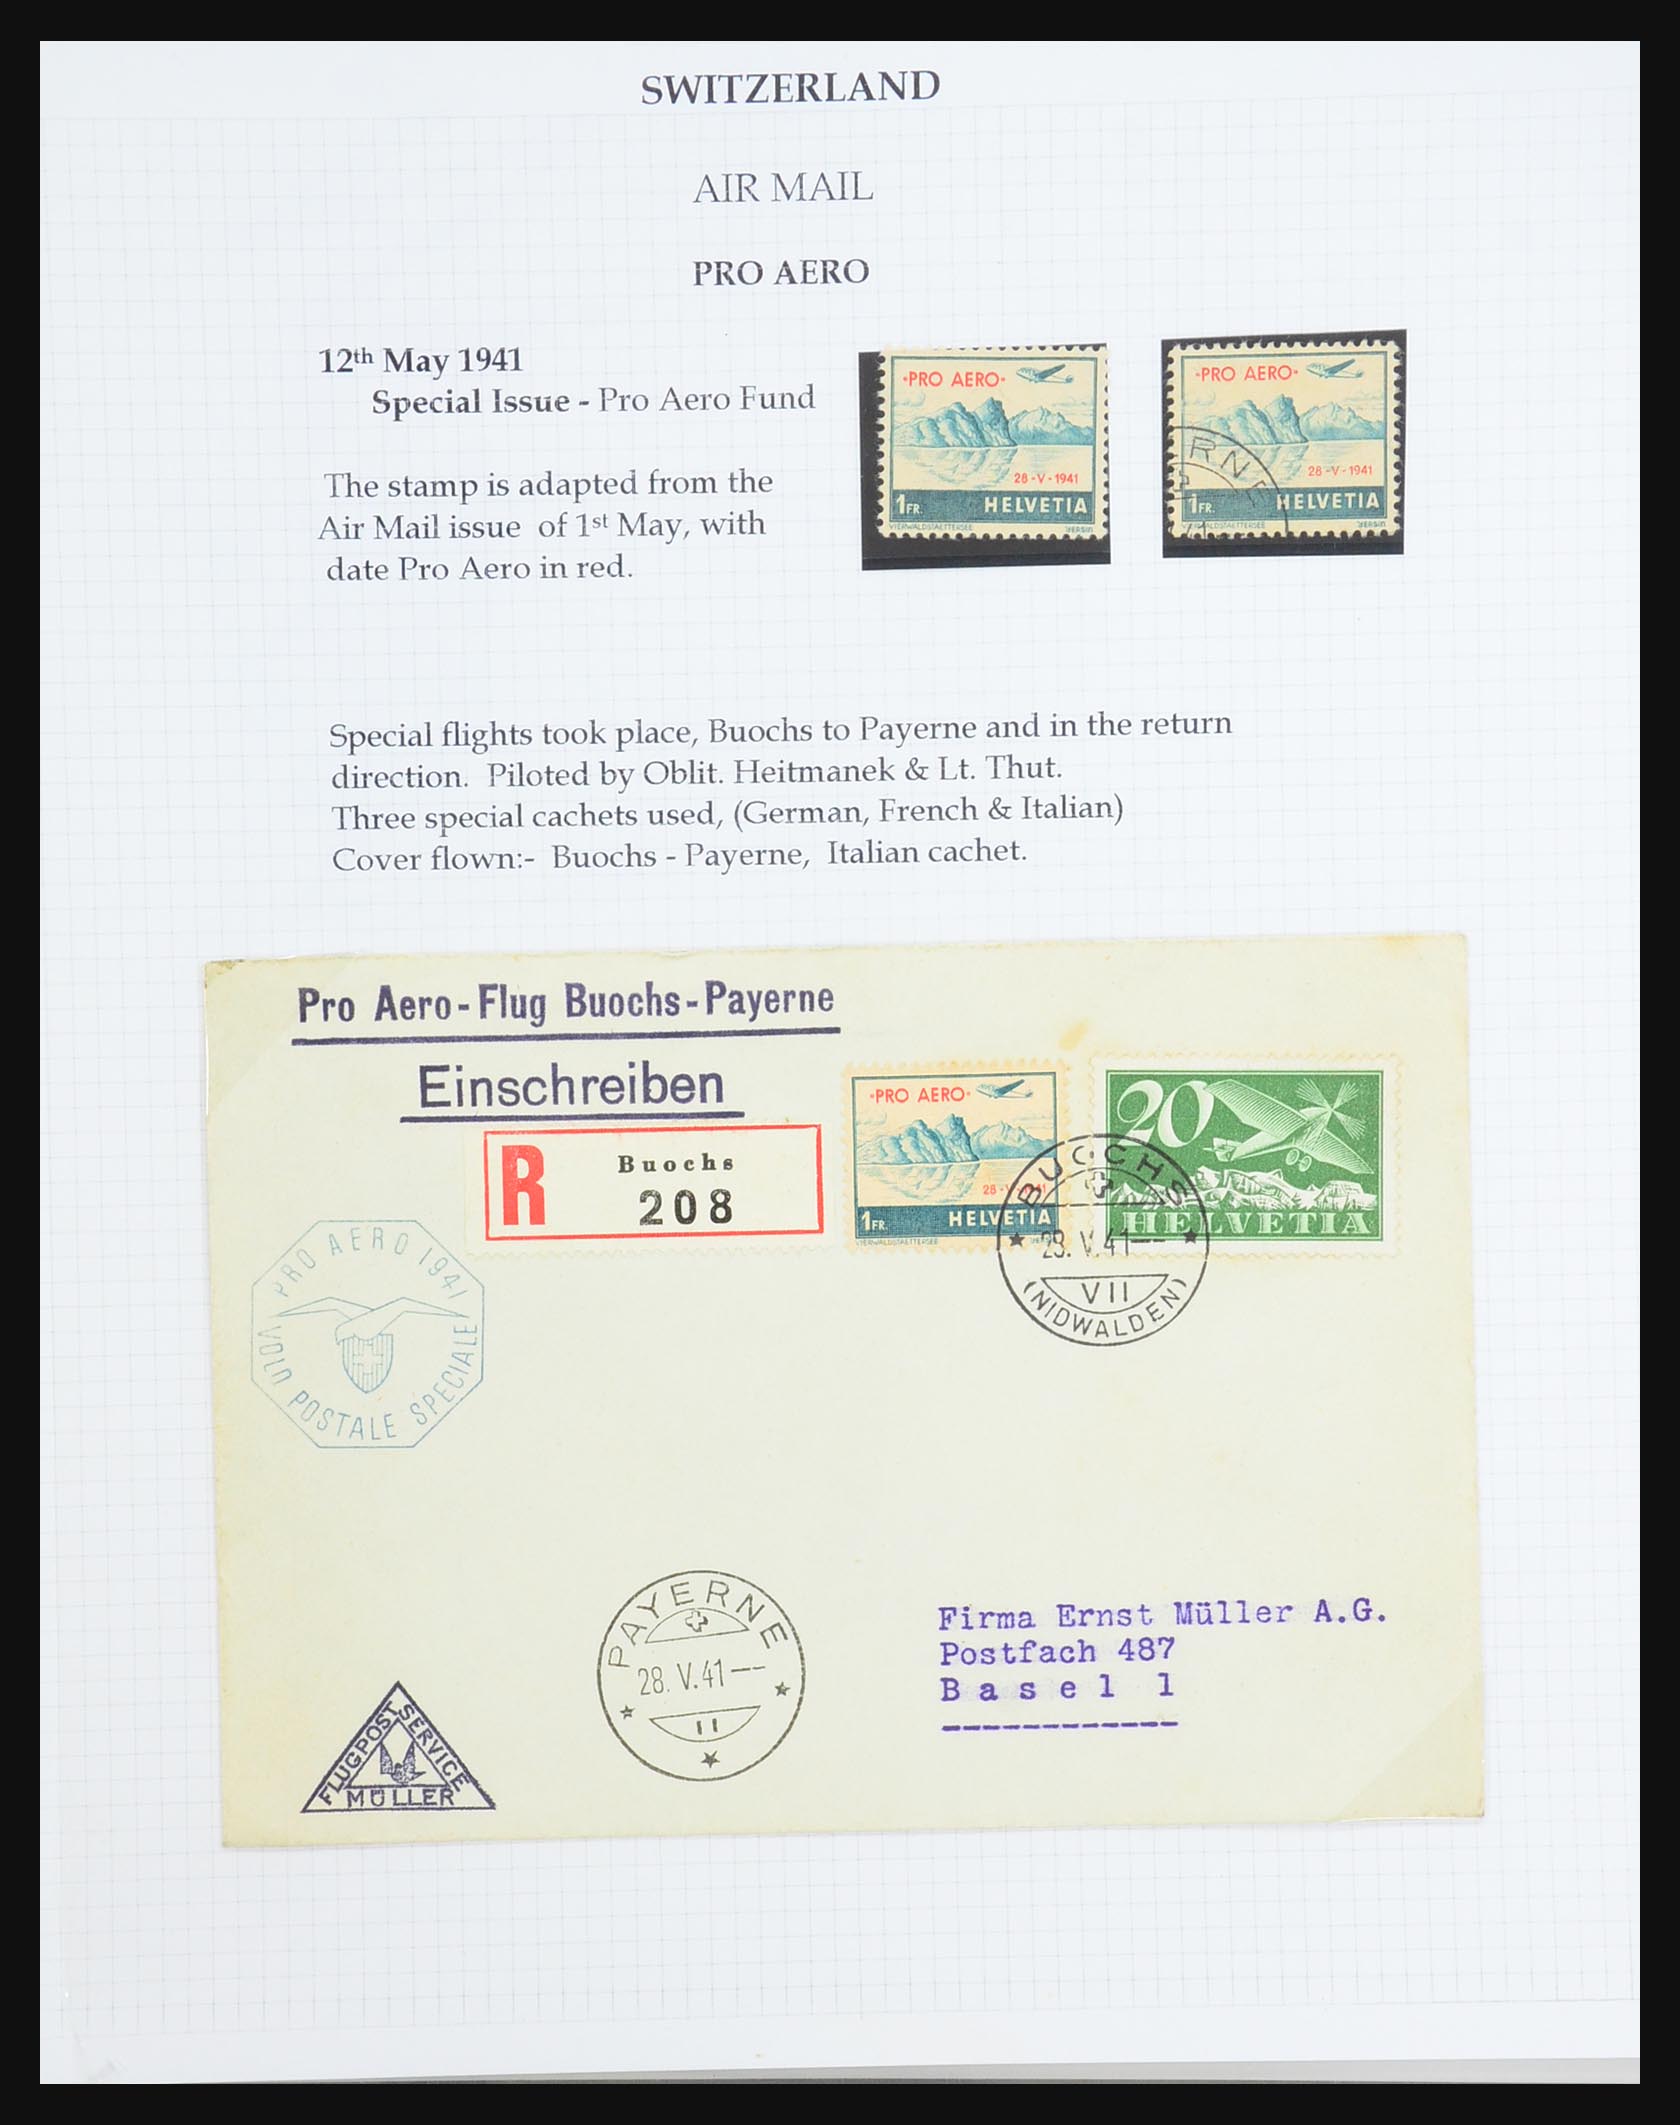 31444 110 - 31444 Zwitserland luchtpost brieven 1922-1946.